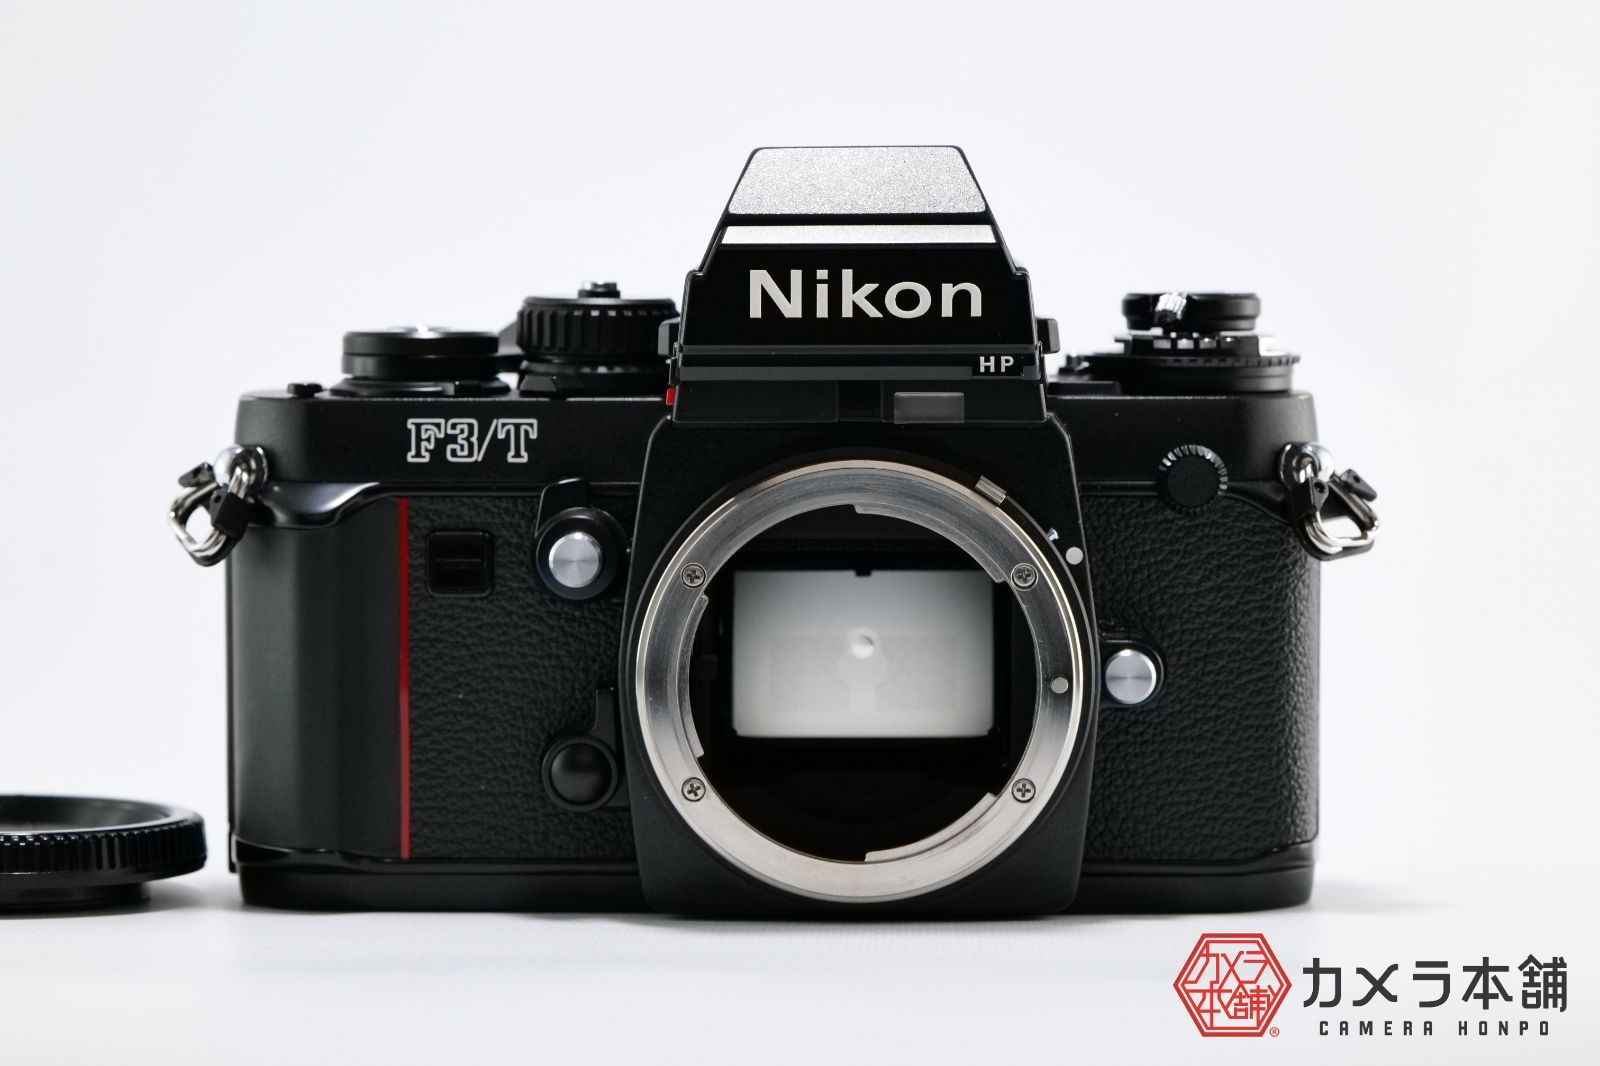 Nikon ニコン F3/T HP チタン ハイアイポイント ブラックボディ - メルカリ